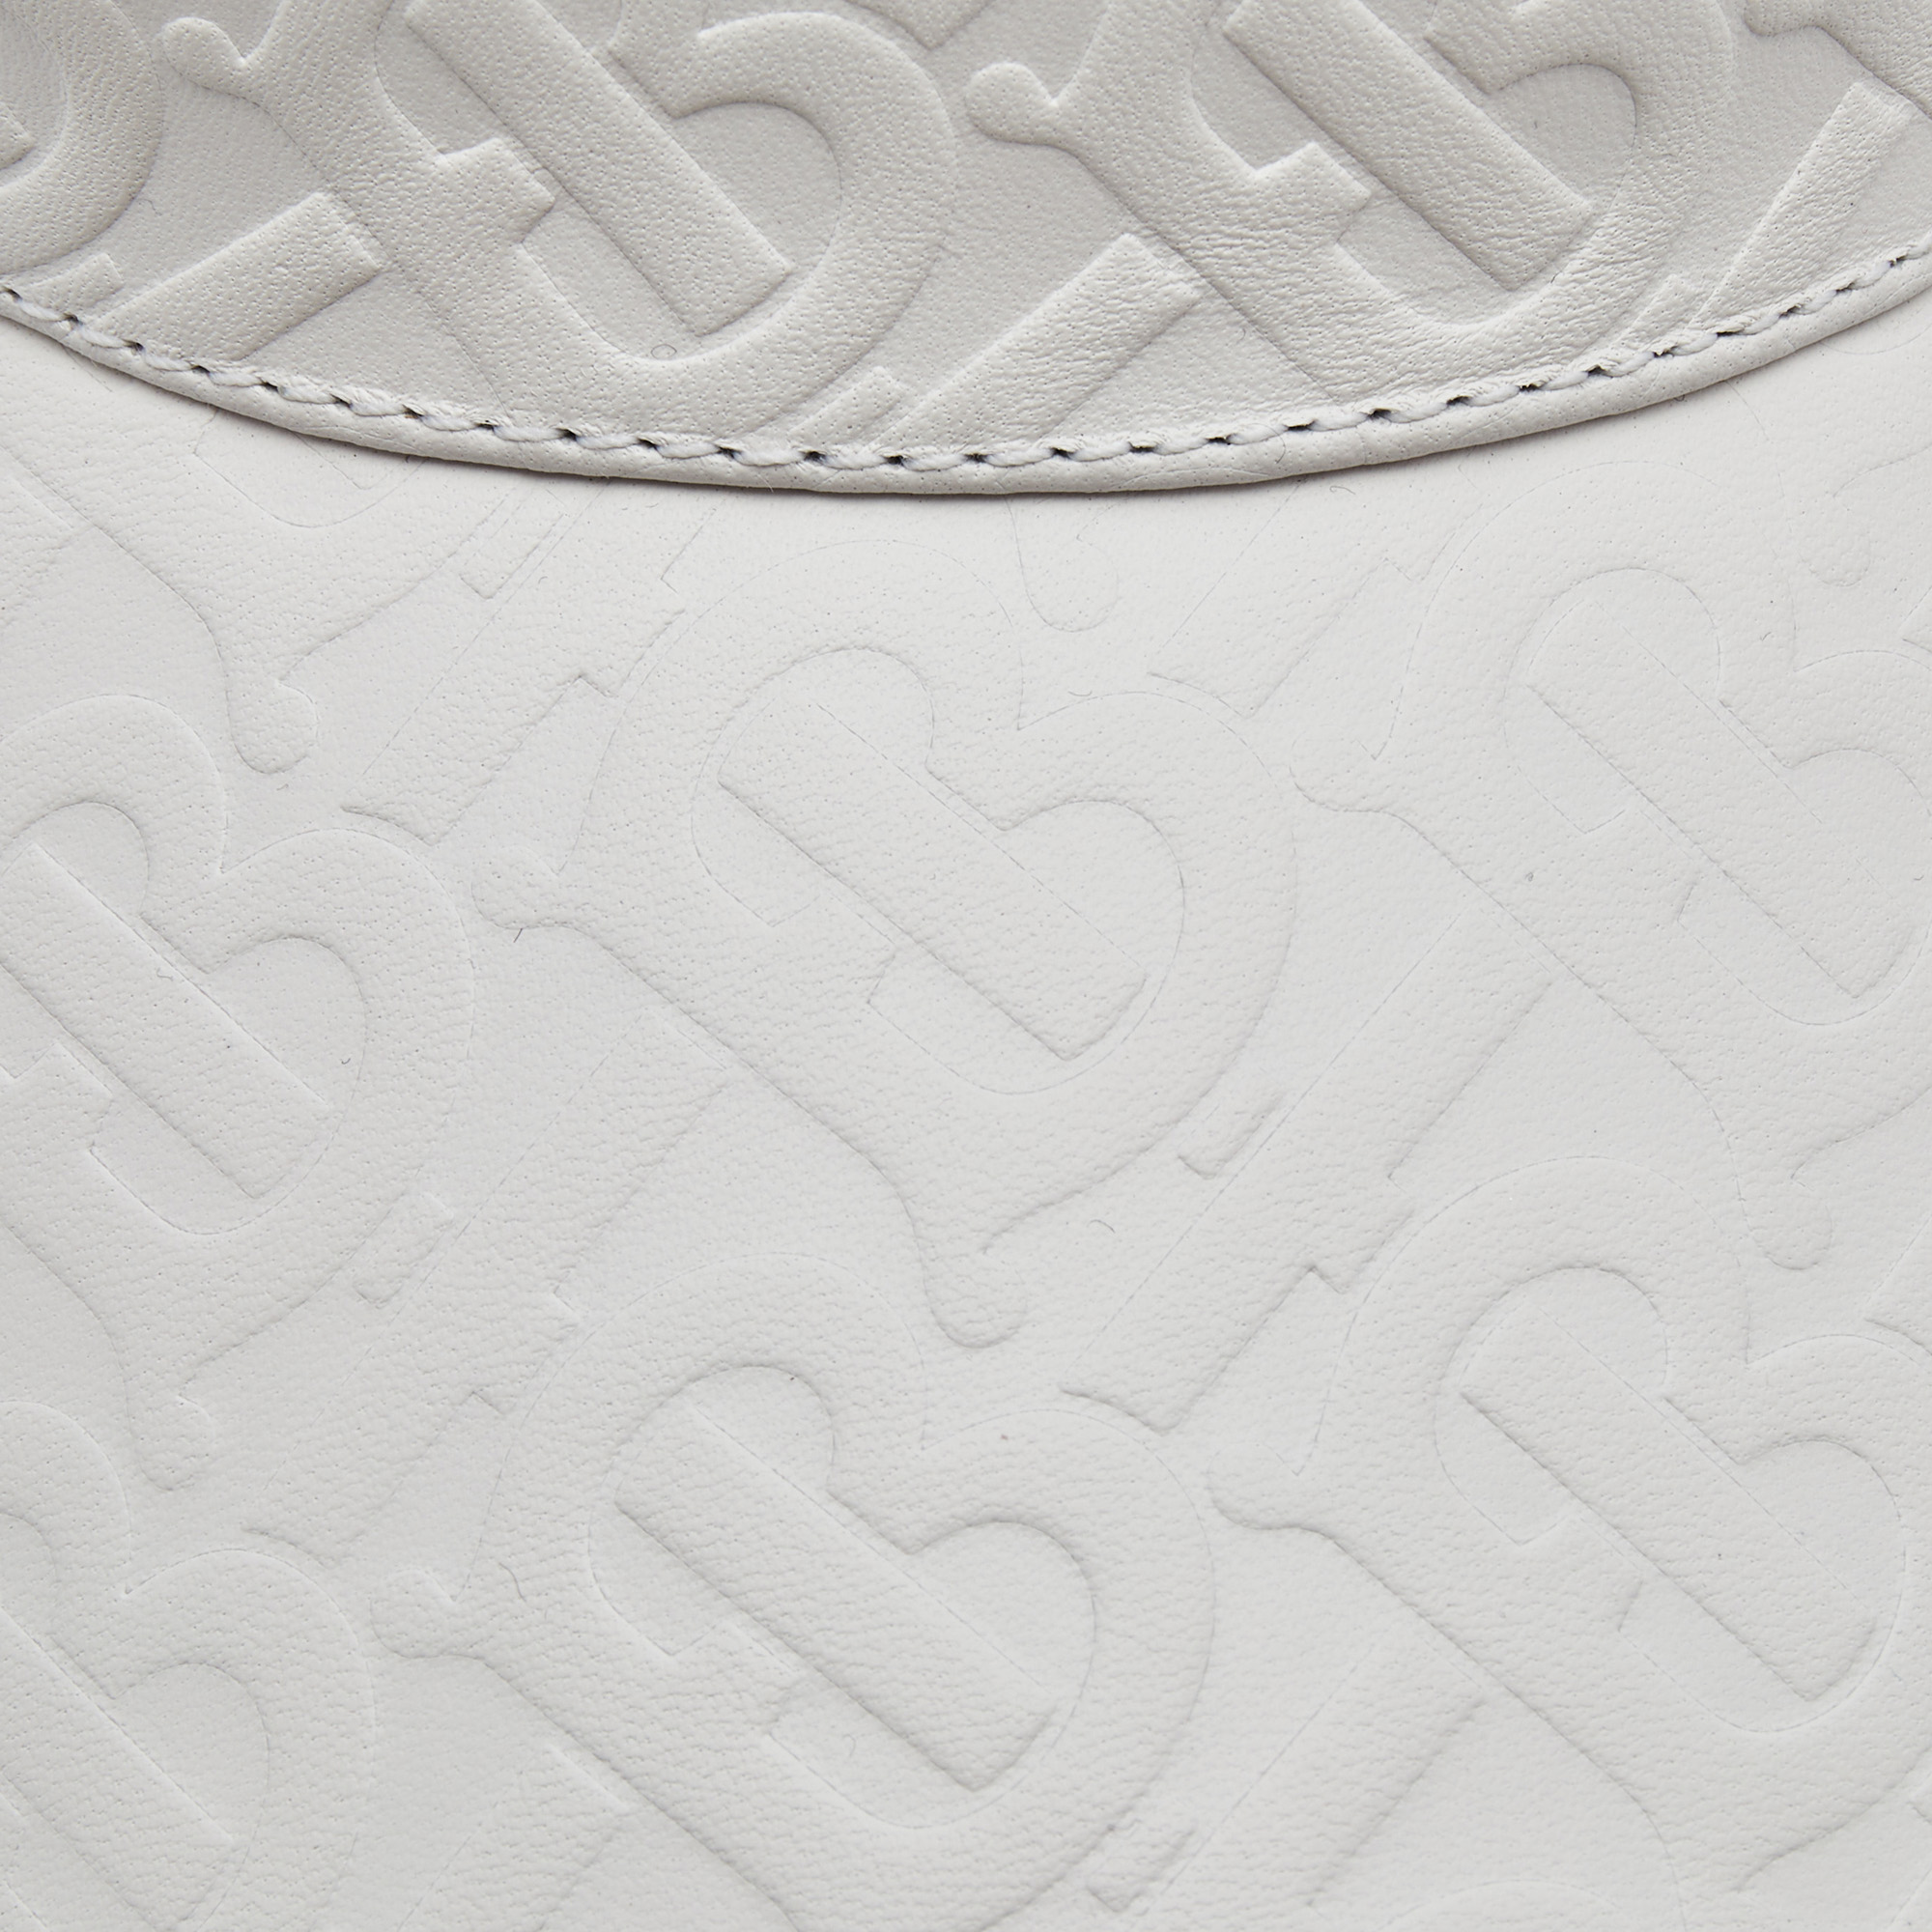 Burberry White TB Monogram Embossed Leather Visor S